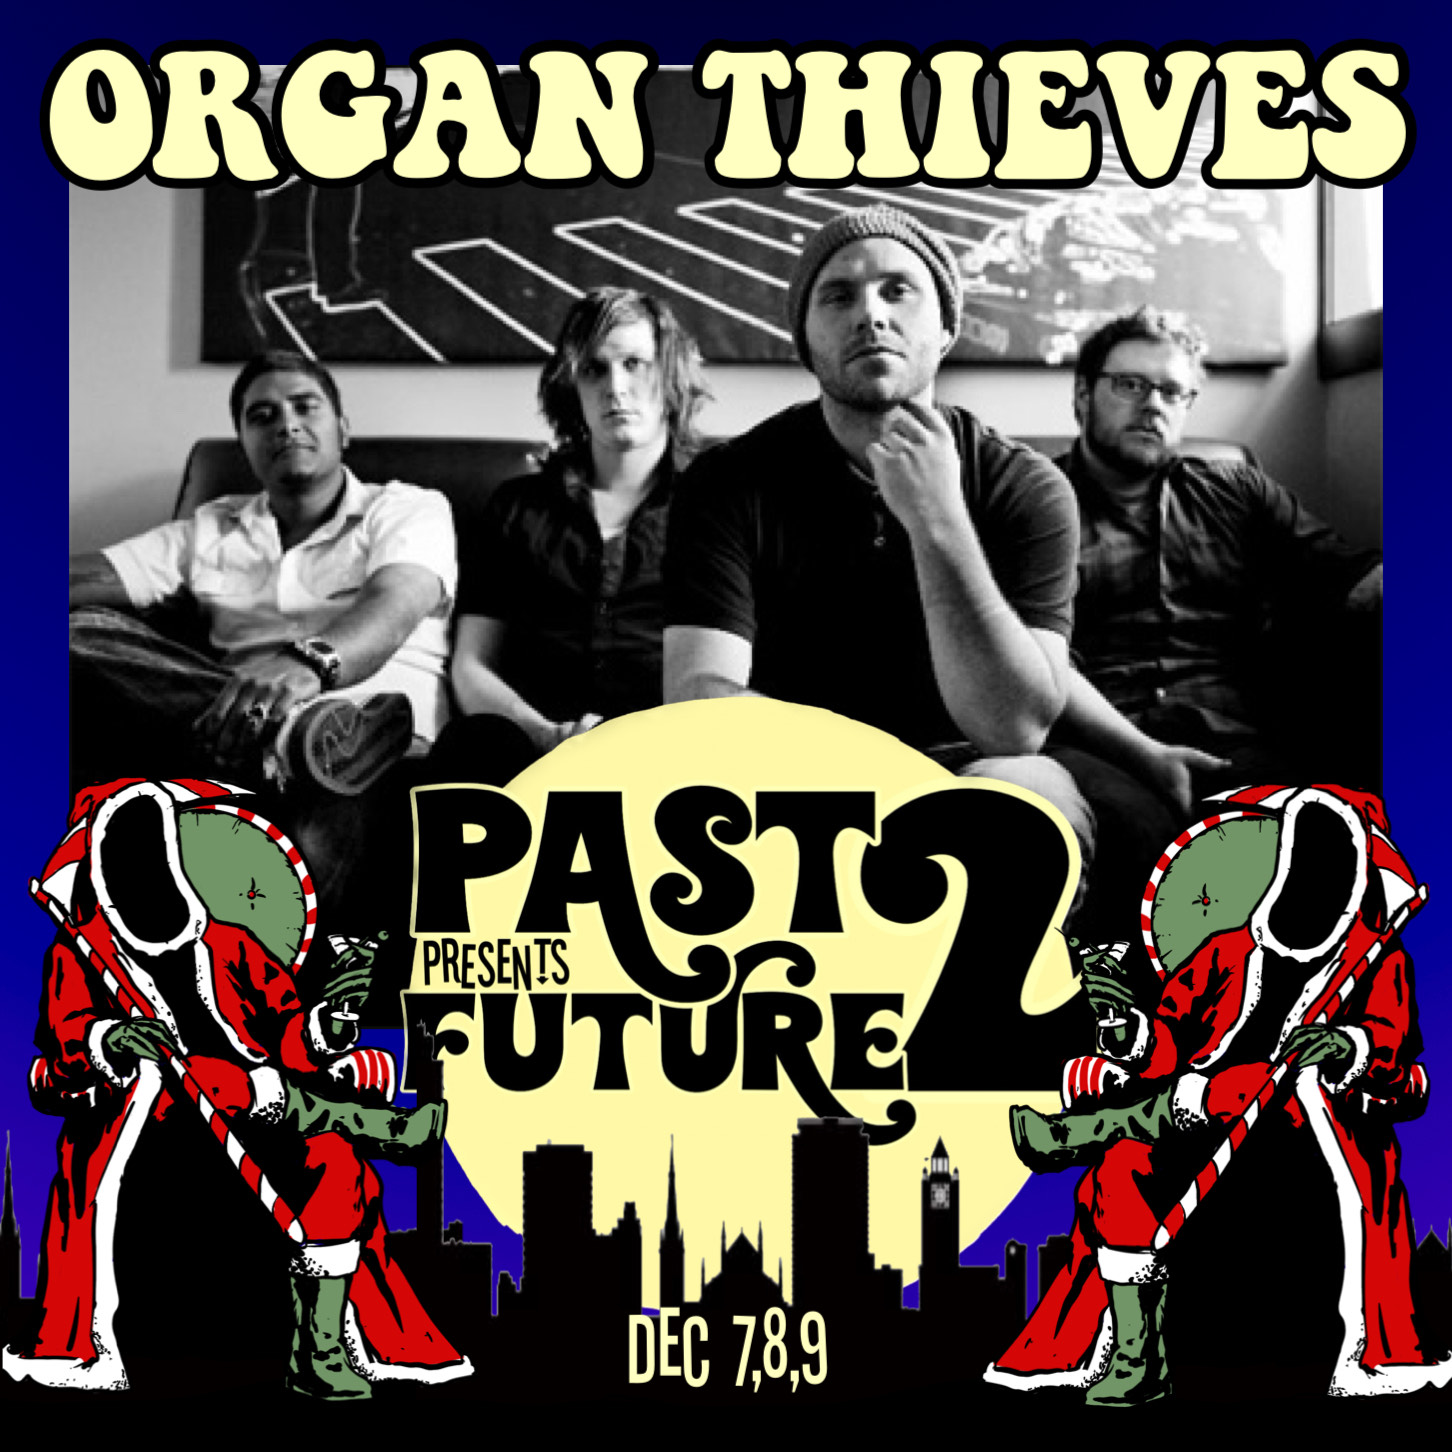 Organ Thieves at Past Presents Future 2